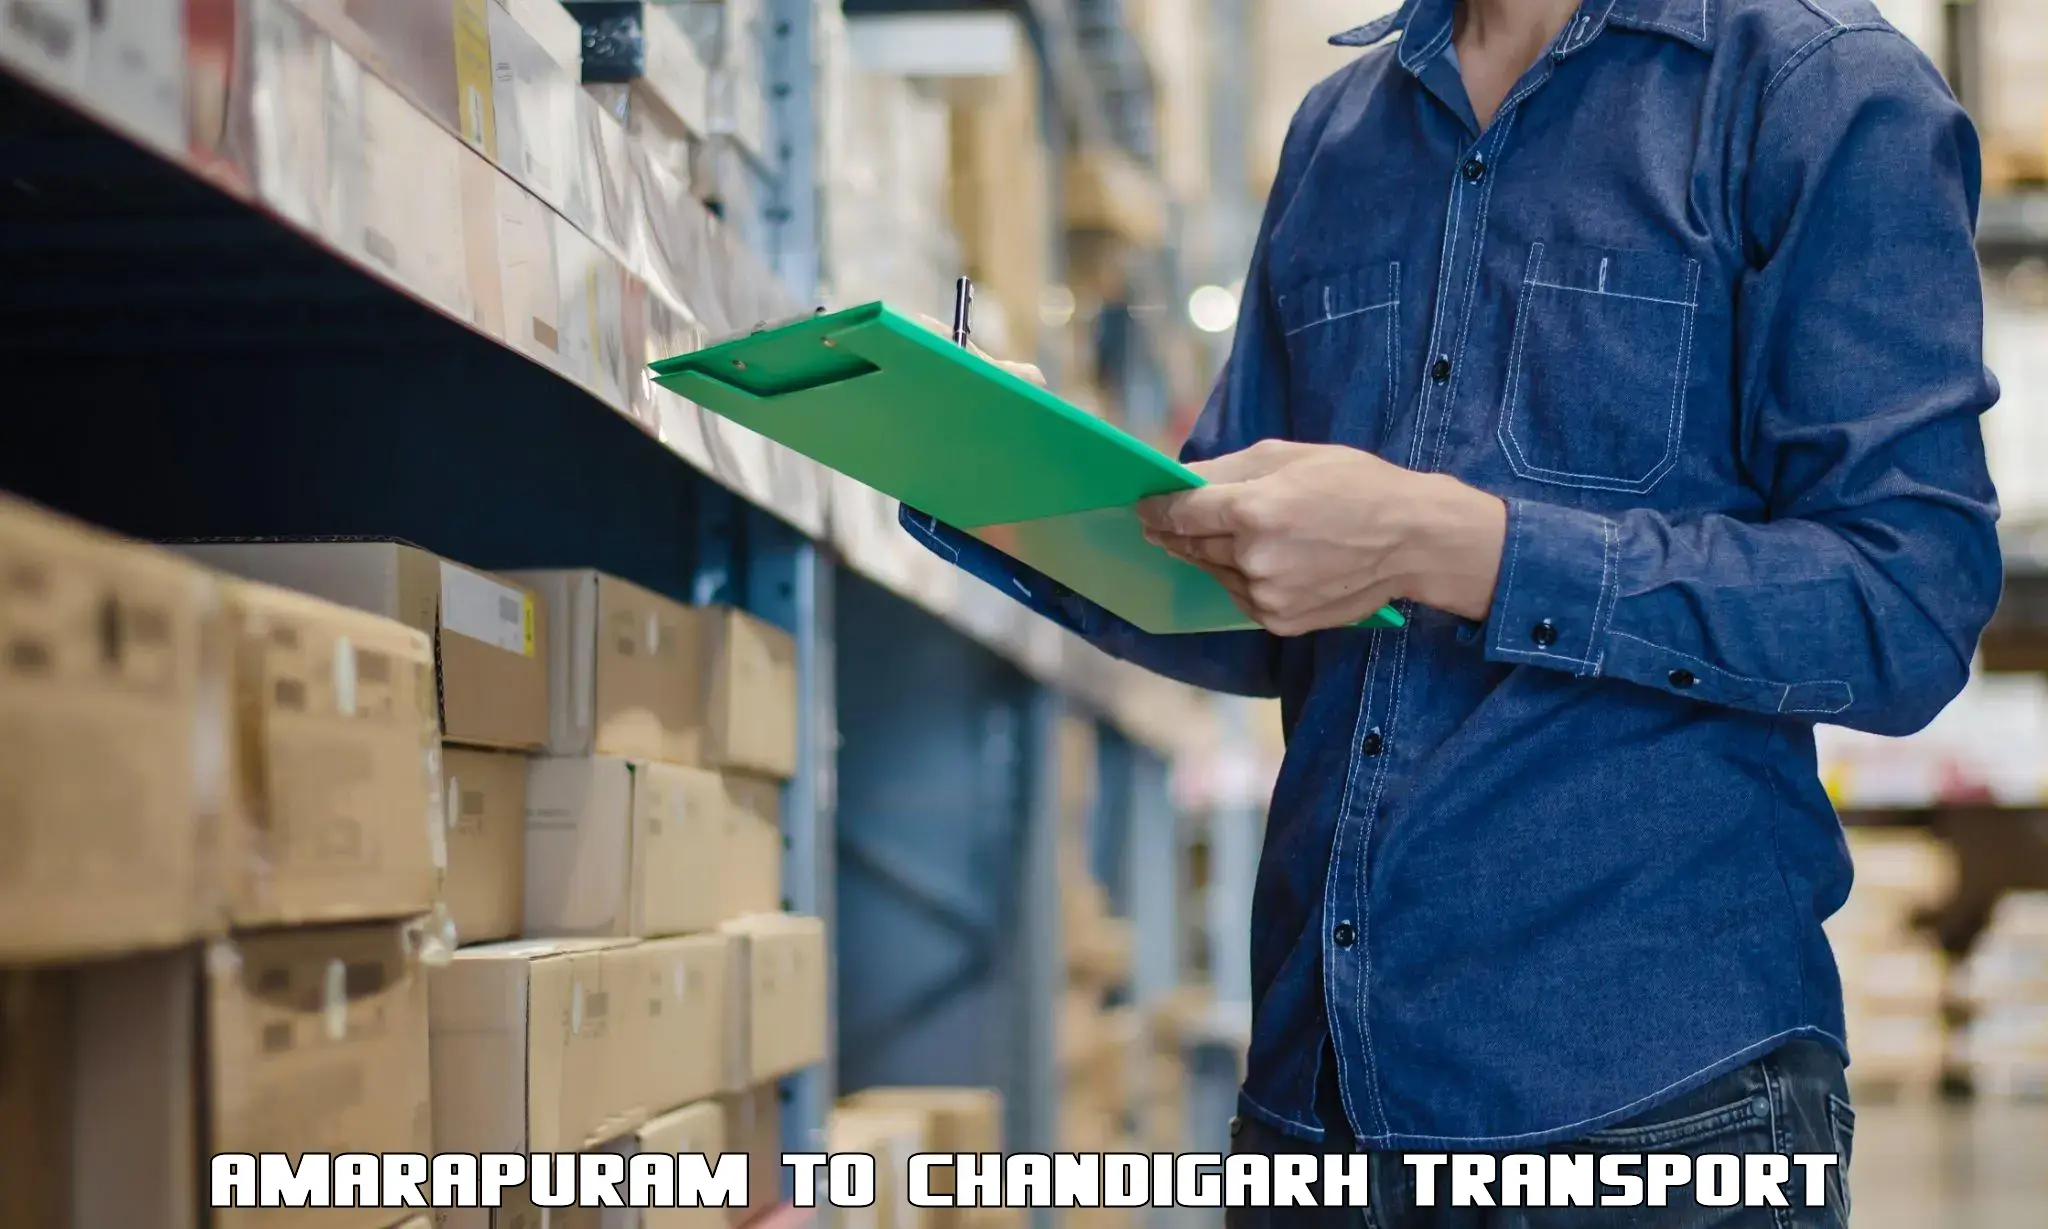 Air freight transport services Amarapuram to Chandigarh